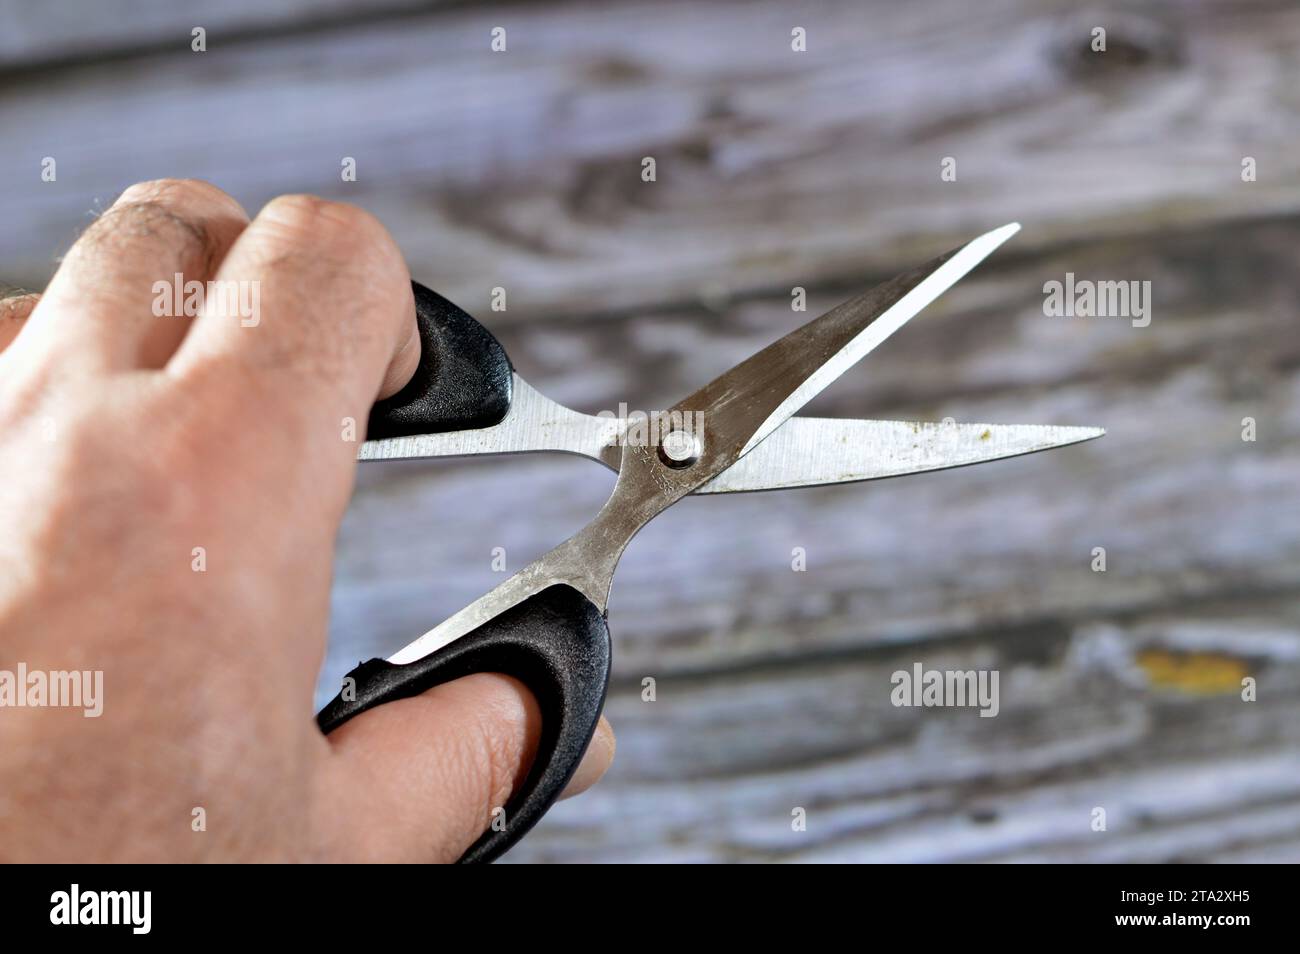 Le forbici in acciaio inox, le forbici sono utensili di taglio manuali, un paio di lame metalliche, utilizzate per il taglio di vari materiali sottili, come carta, c Foto Stock